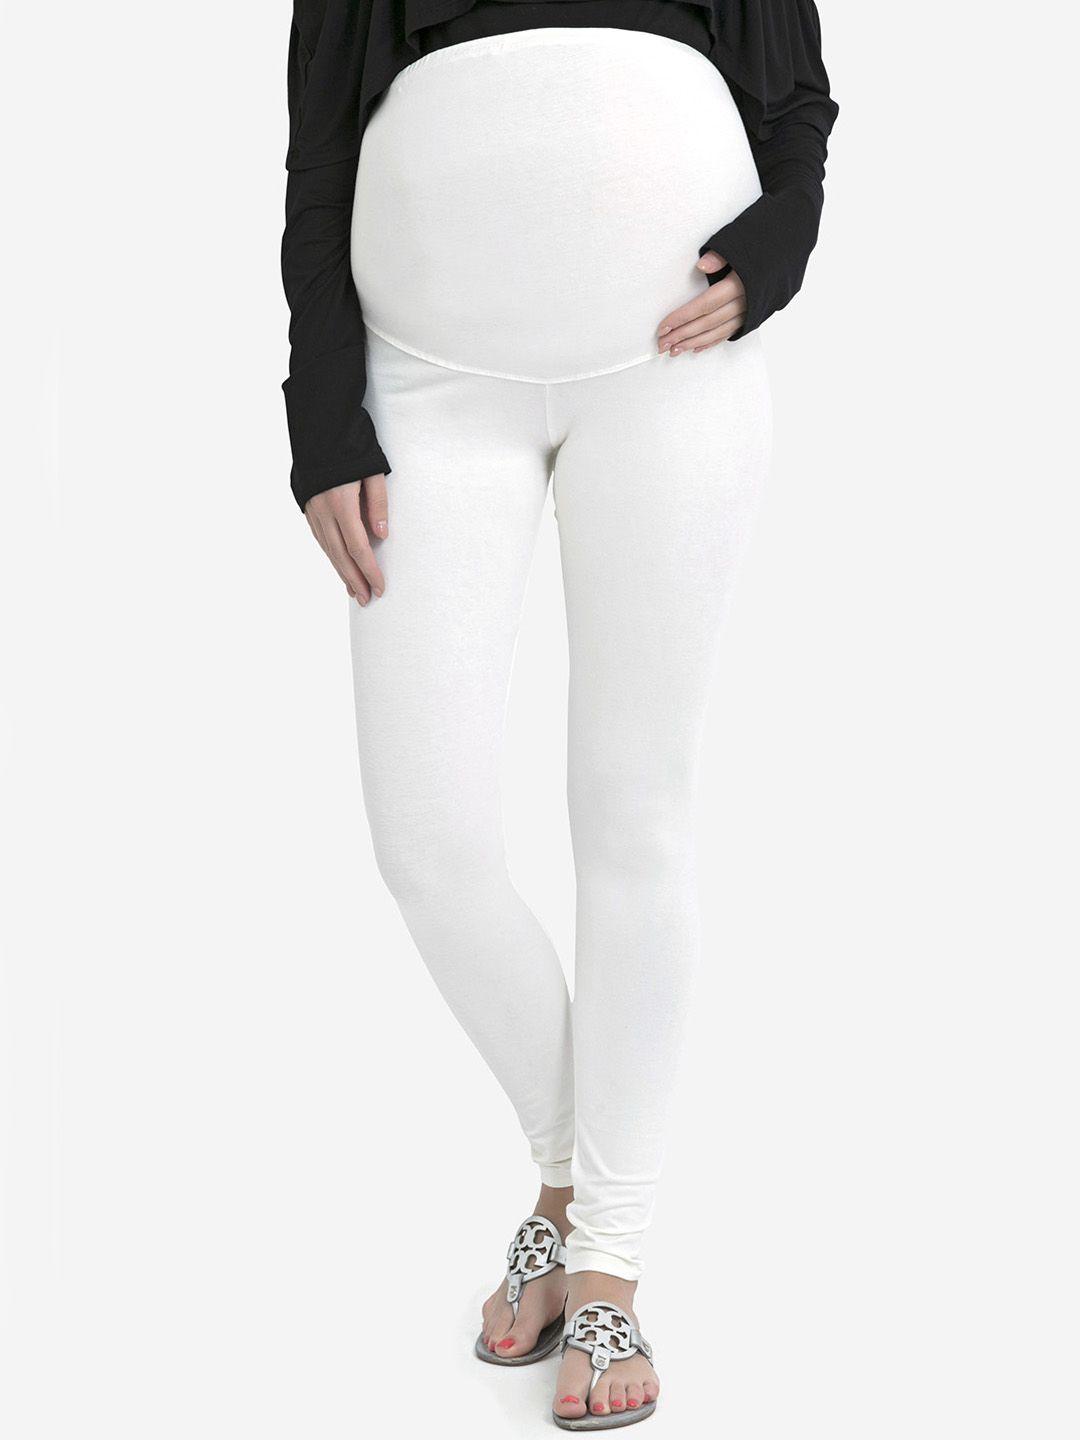 blush 9 maternity women off-white solid ankle-length maternity leggings